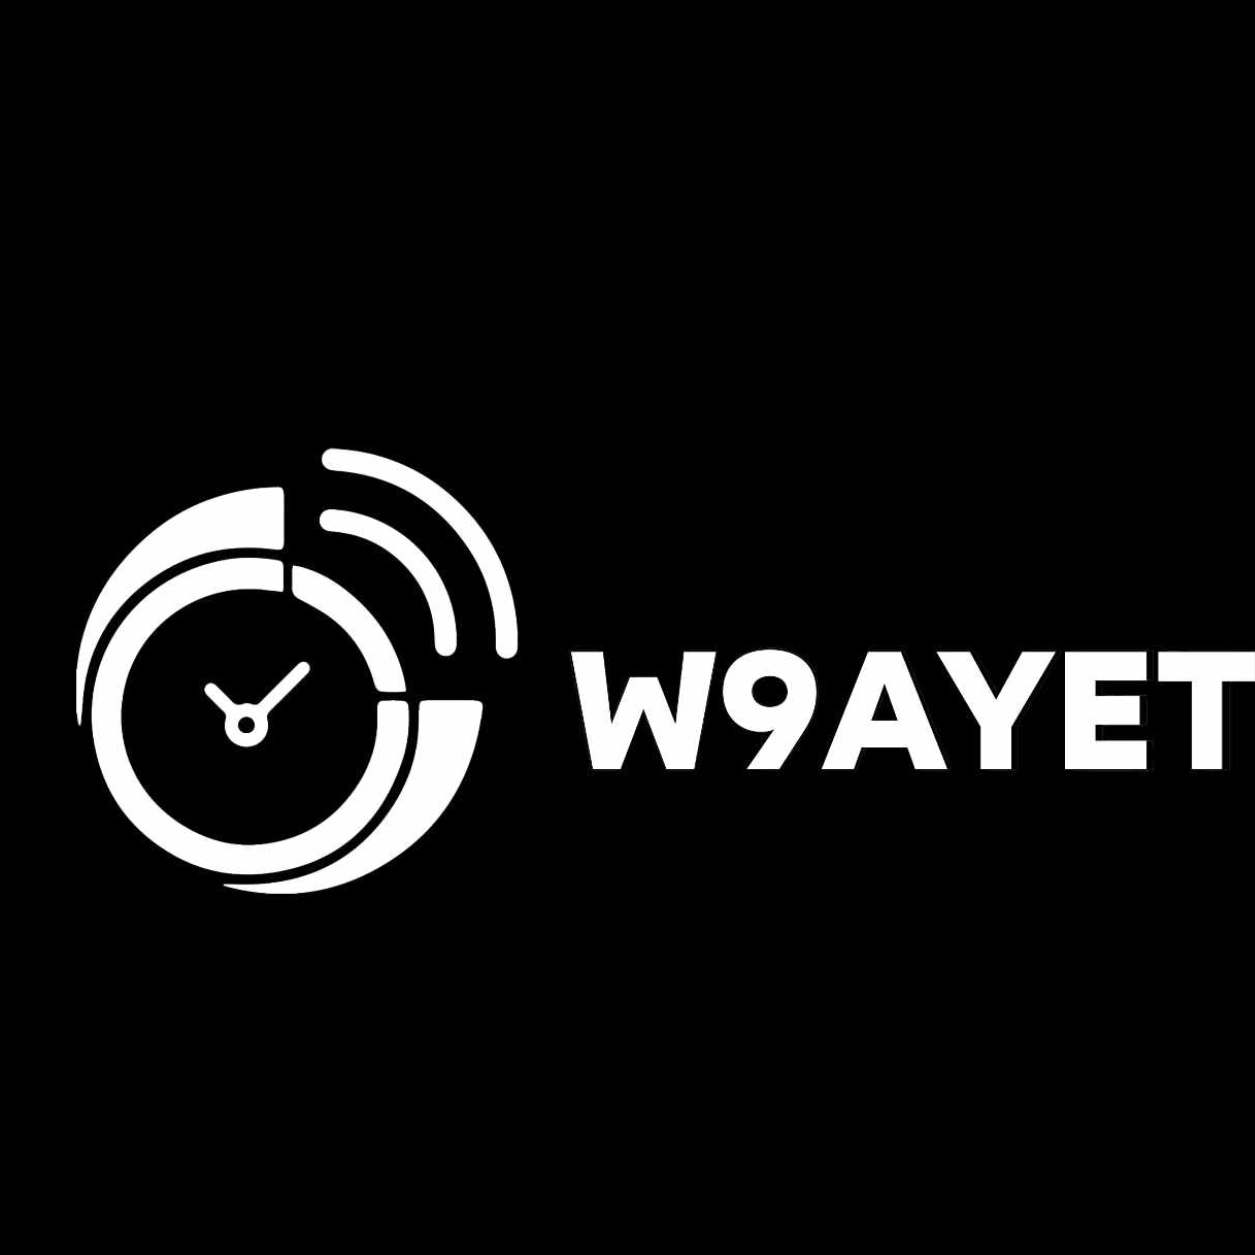 W9ayet Podcast By RCN